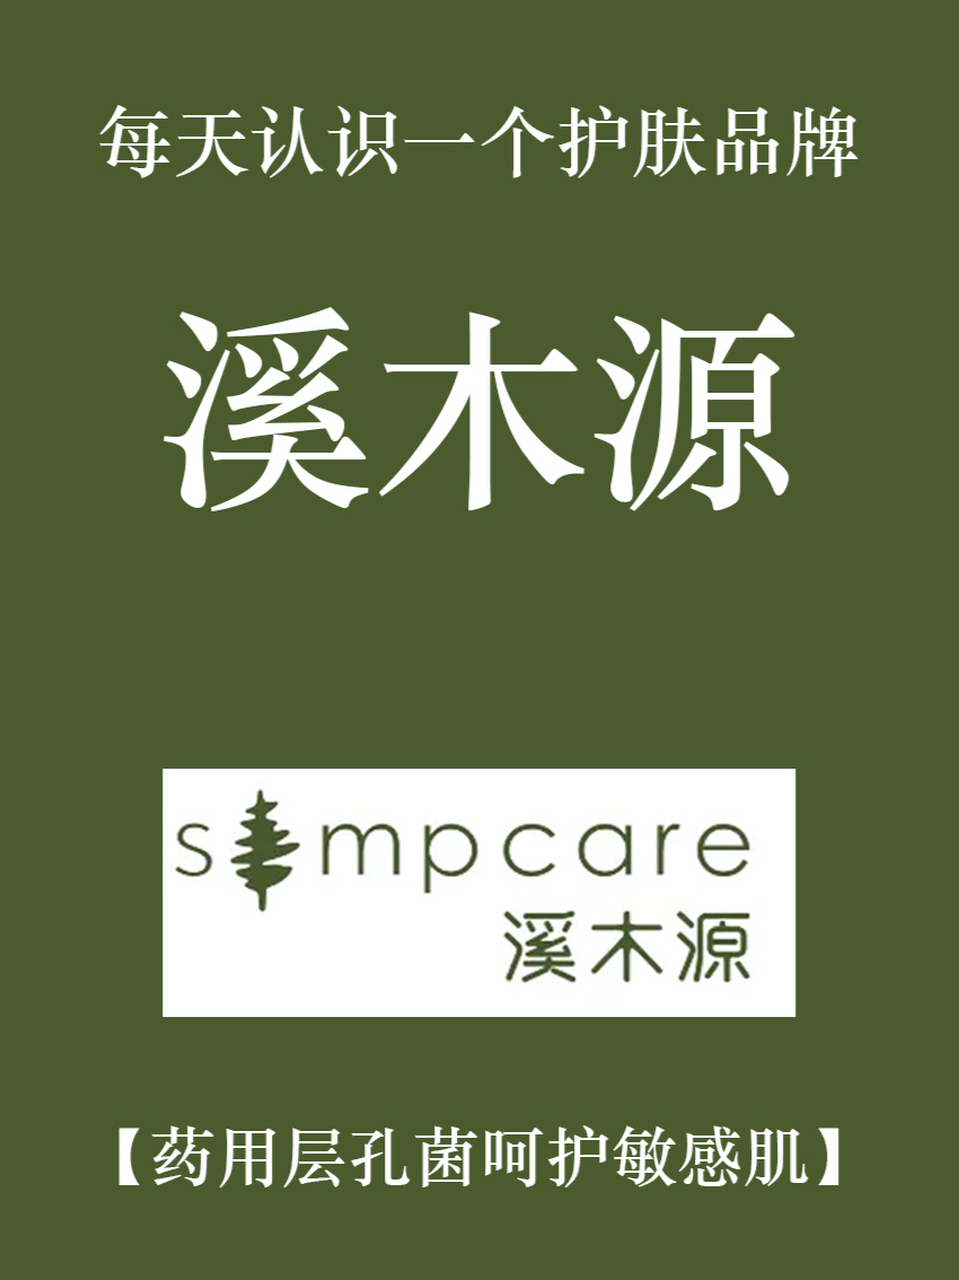 溪木源logo图片